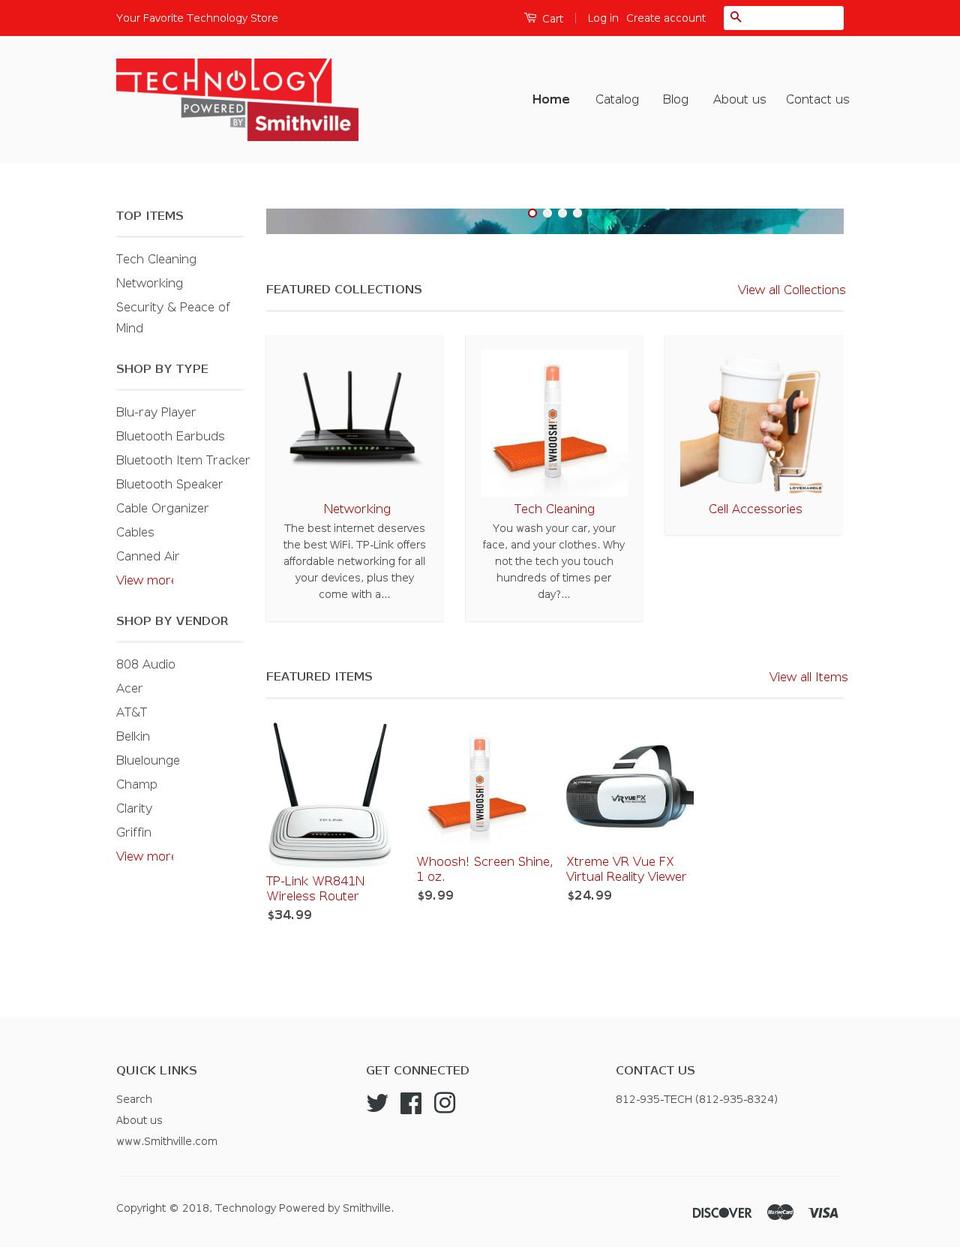 smithville.tech shopify website screenshot